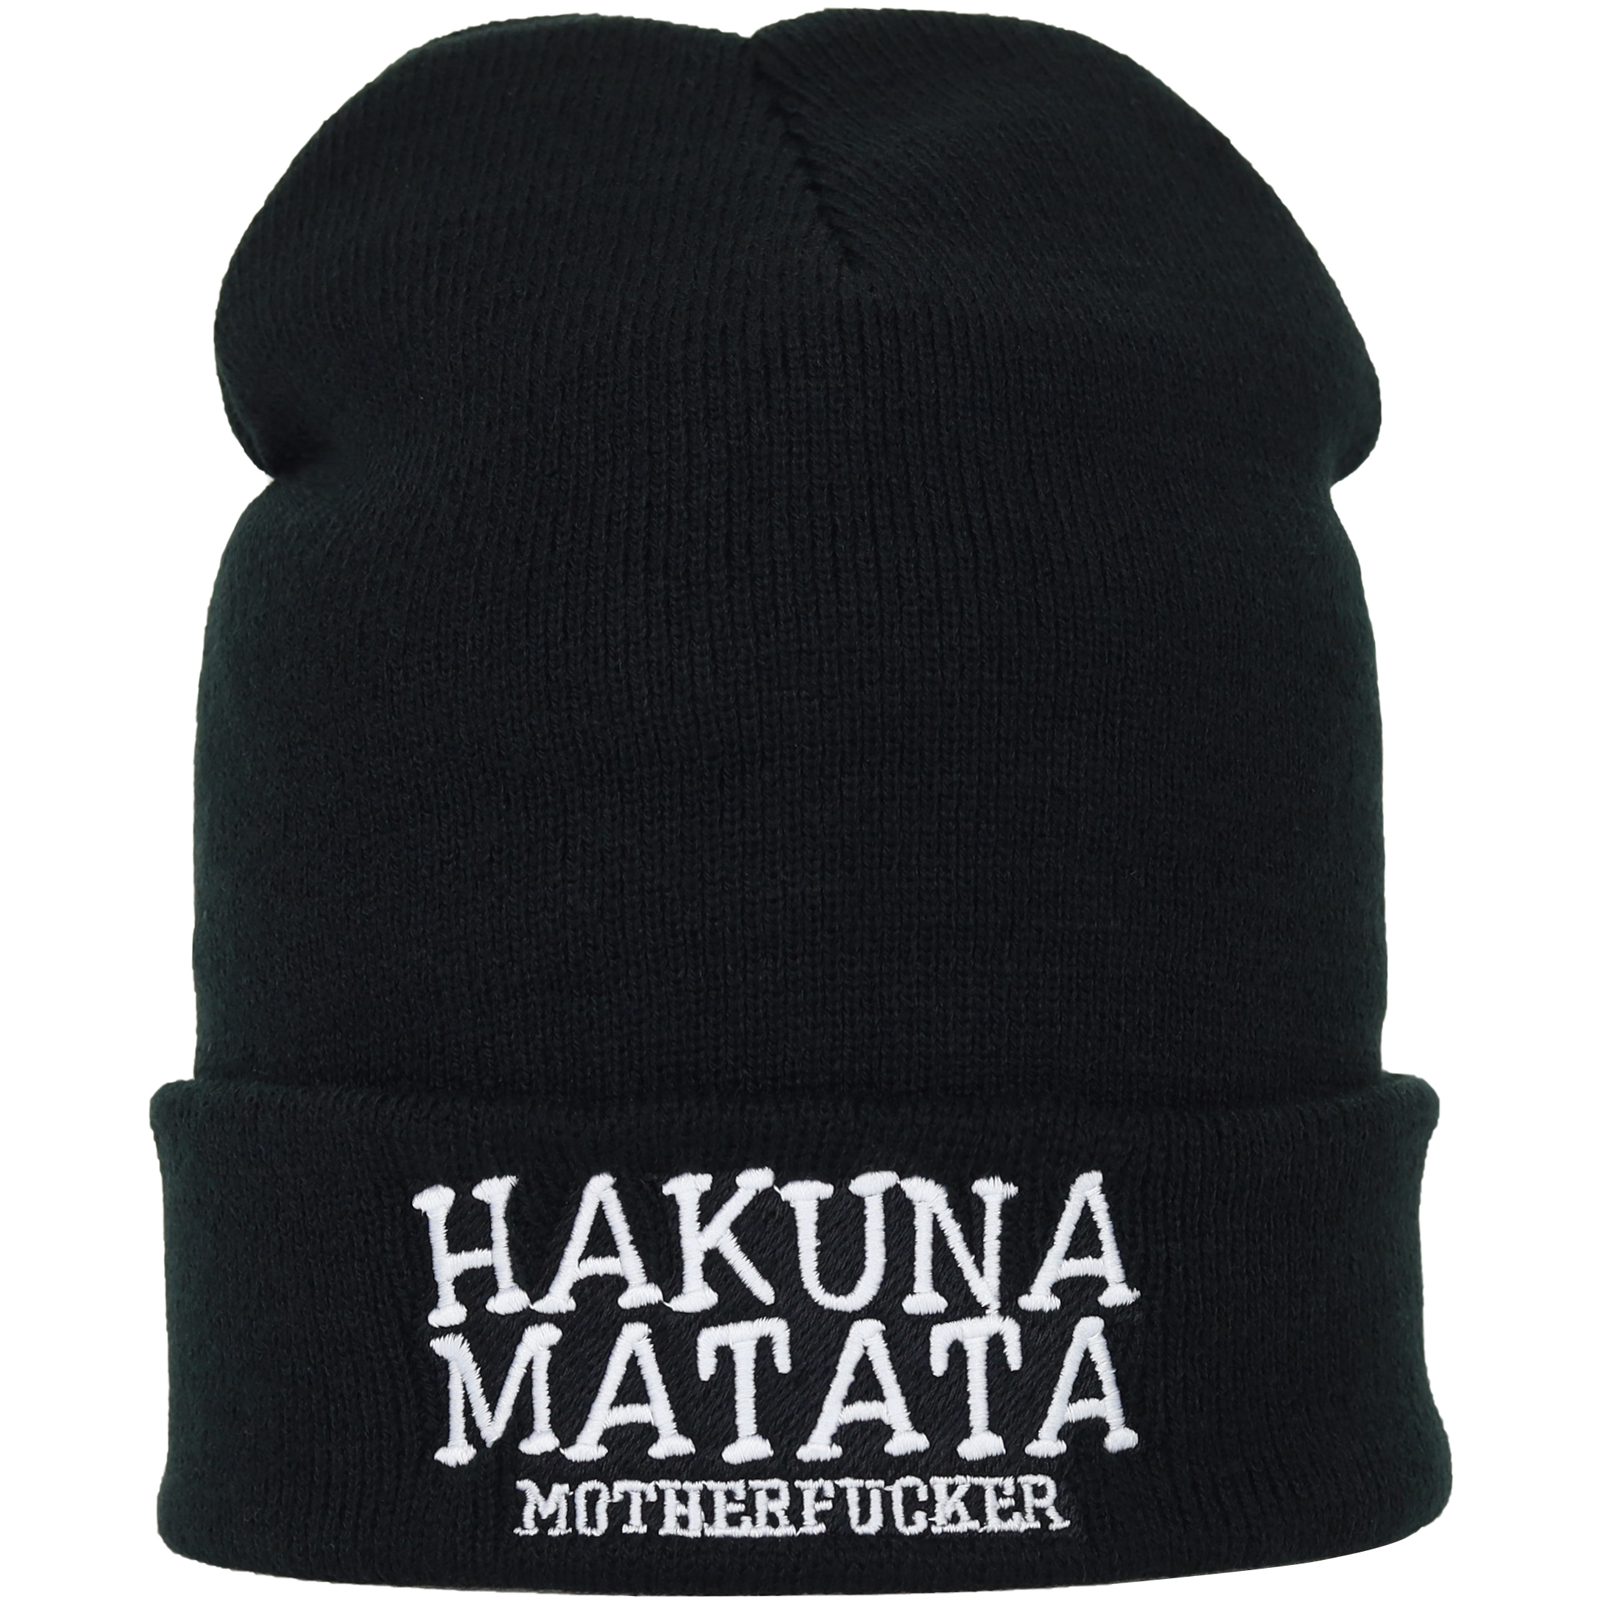 Hakuna Matata (Motherfucker) - Strickmütze